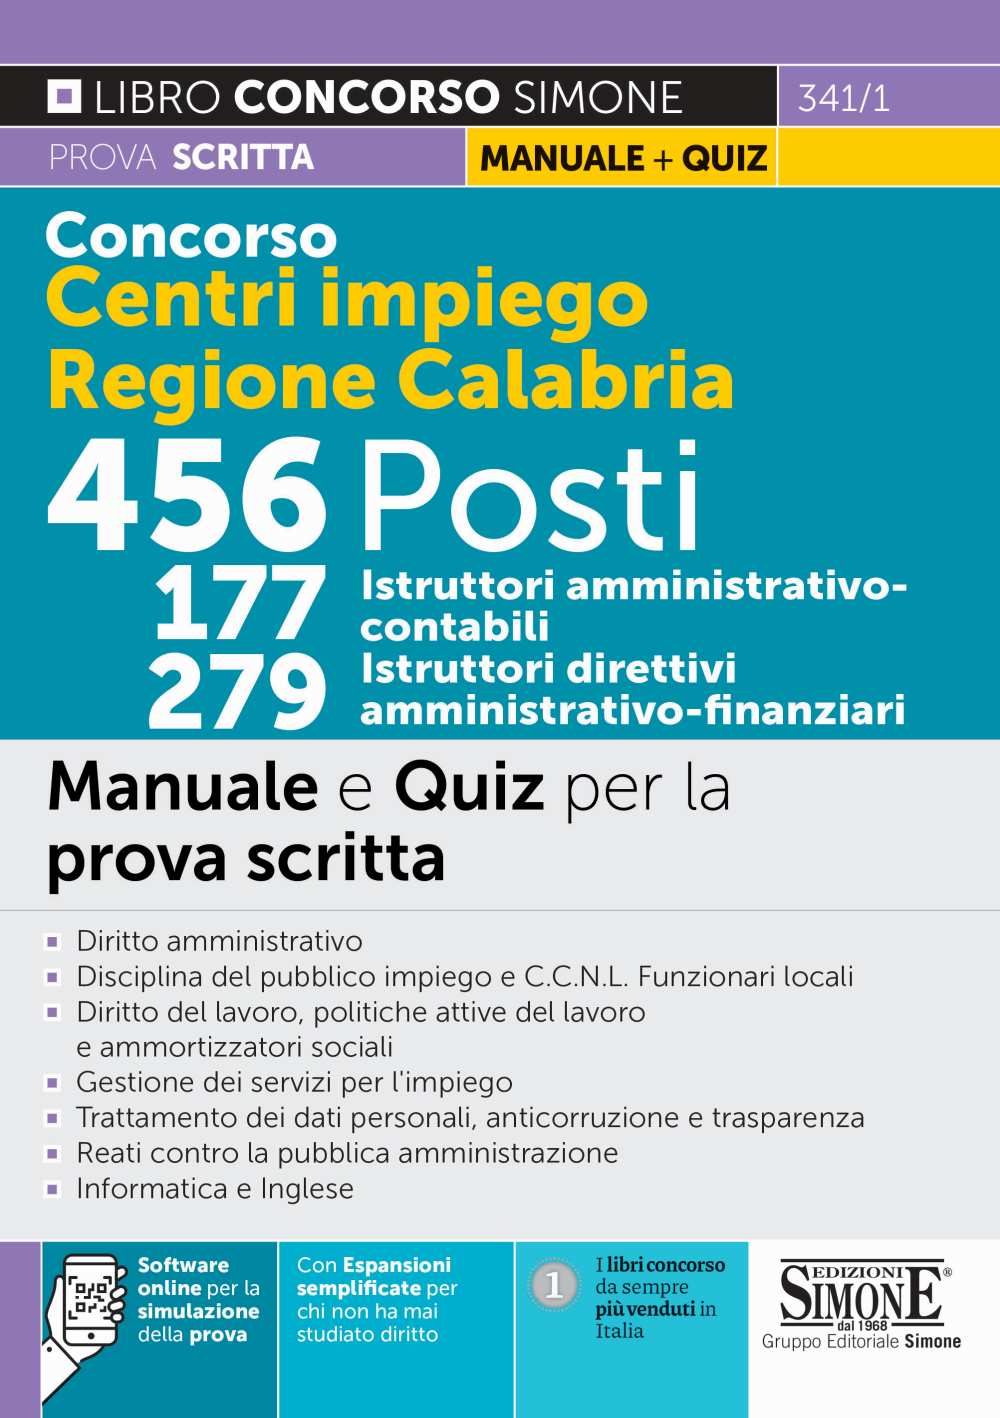 Concorso Centri Impiego Regione Calabria 456 posti - 177 Istruttori amministrativo-contabili e 279 Istruttori direttivo amministrativo-finanziari - Manuale e Quiz - 341/1